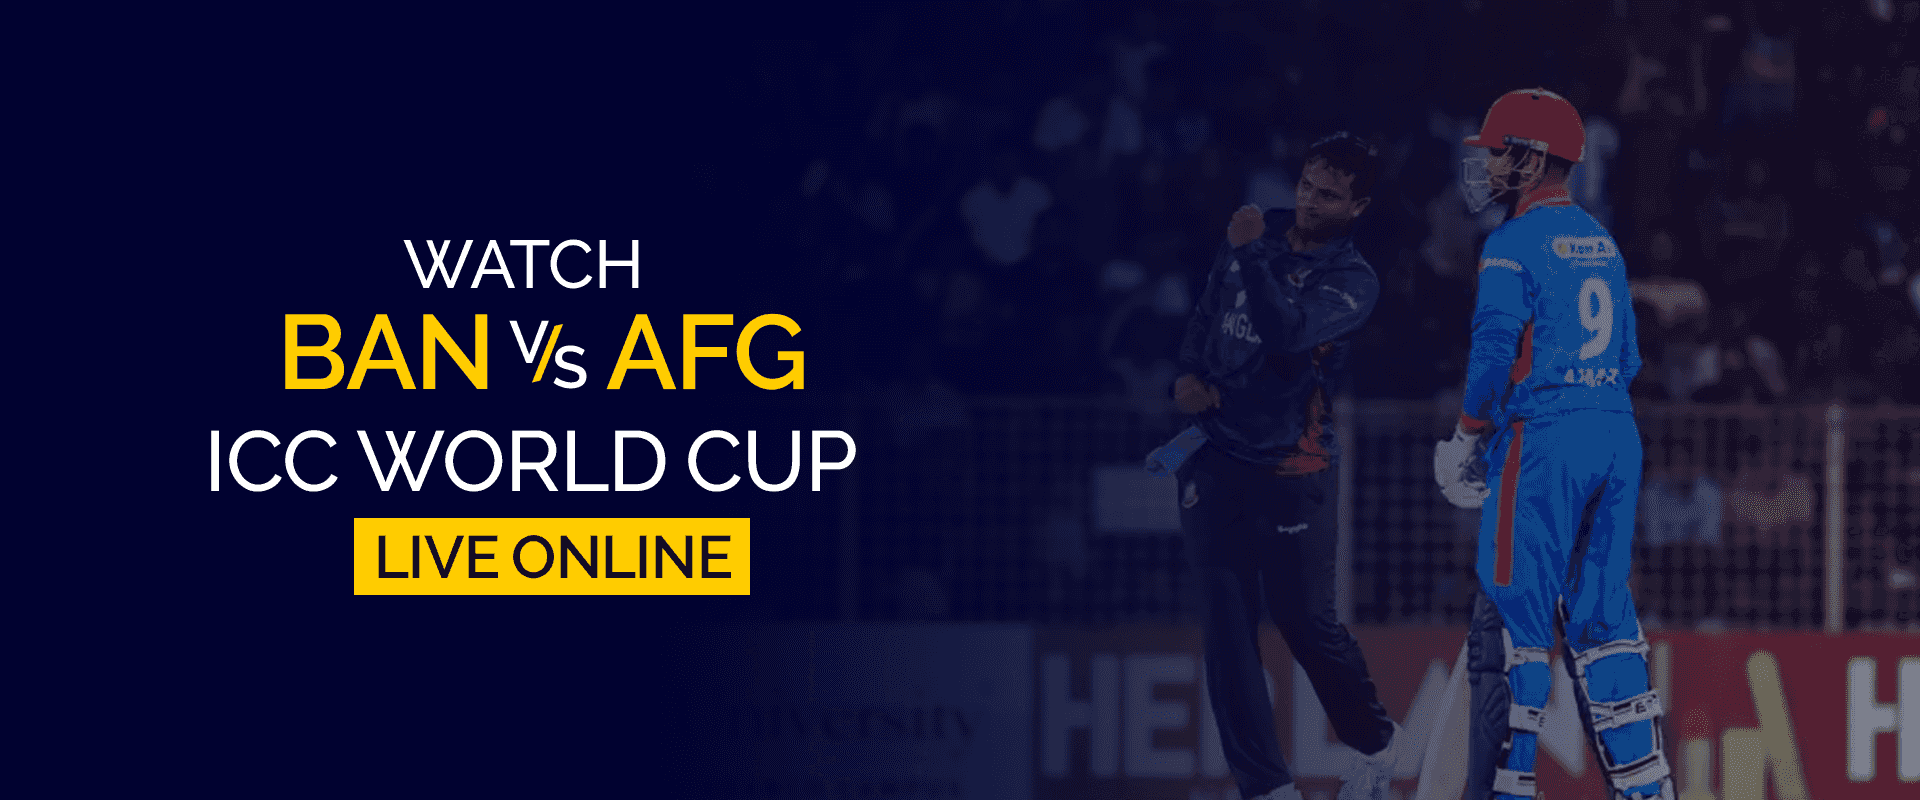 Vea la Copa Mundial BAN vs AFG ICC en vivo en línea